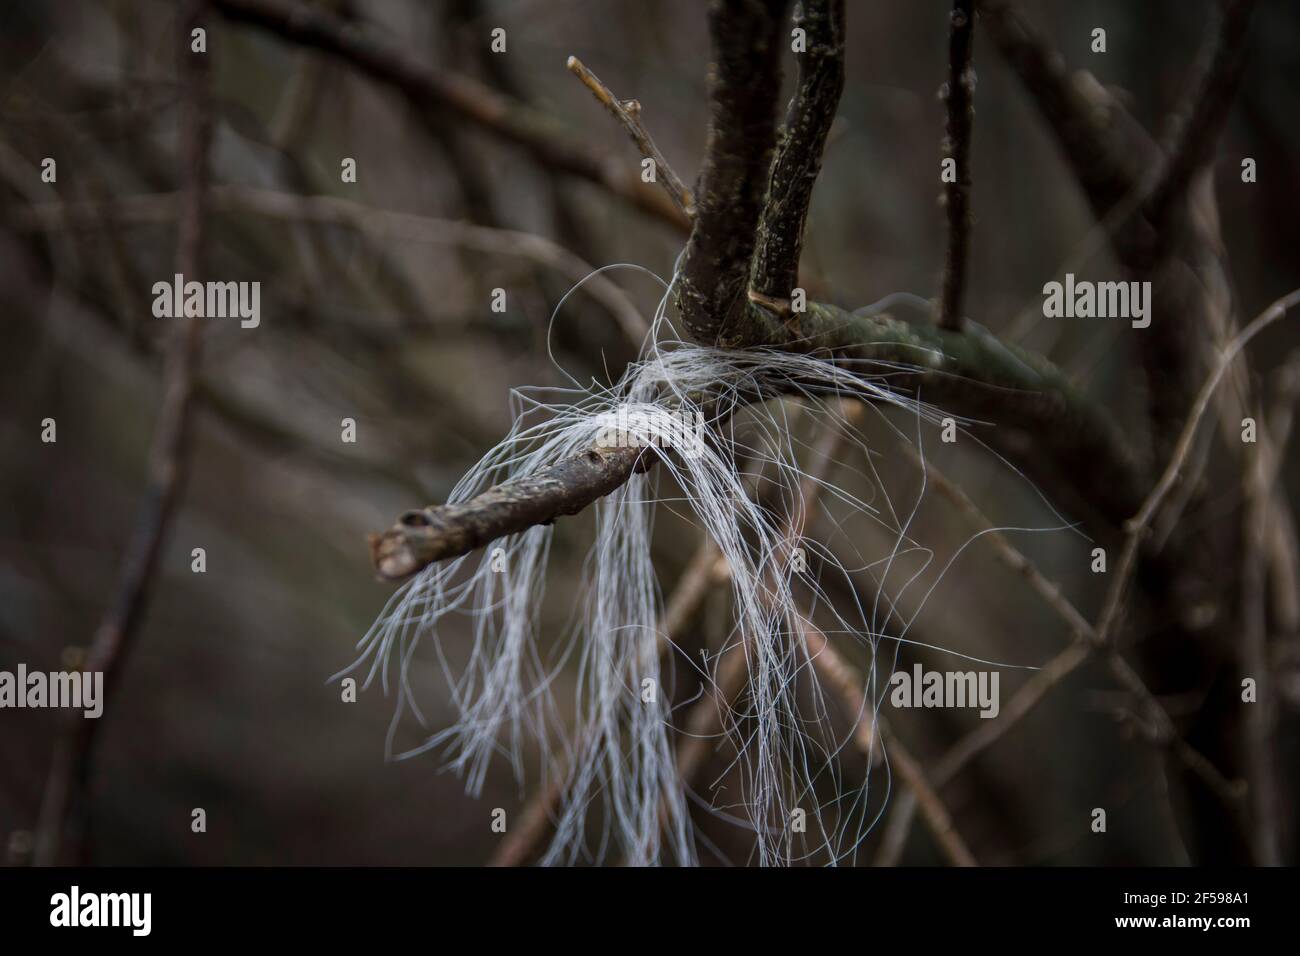 Caballo salvaje blanco pelo pegado en ramas de árbol de la espalda rascándose Foto de stock